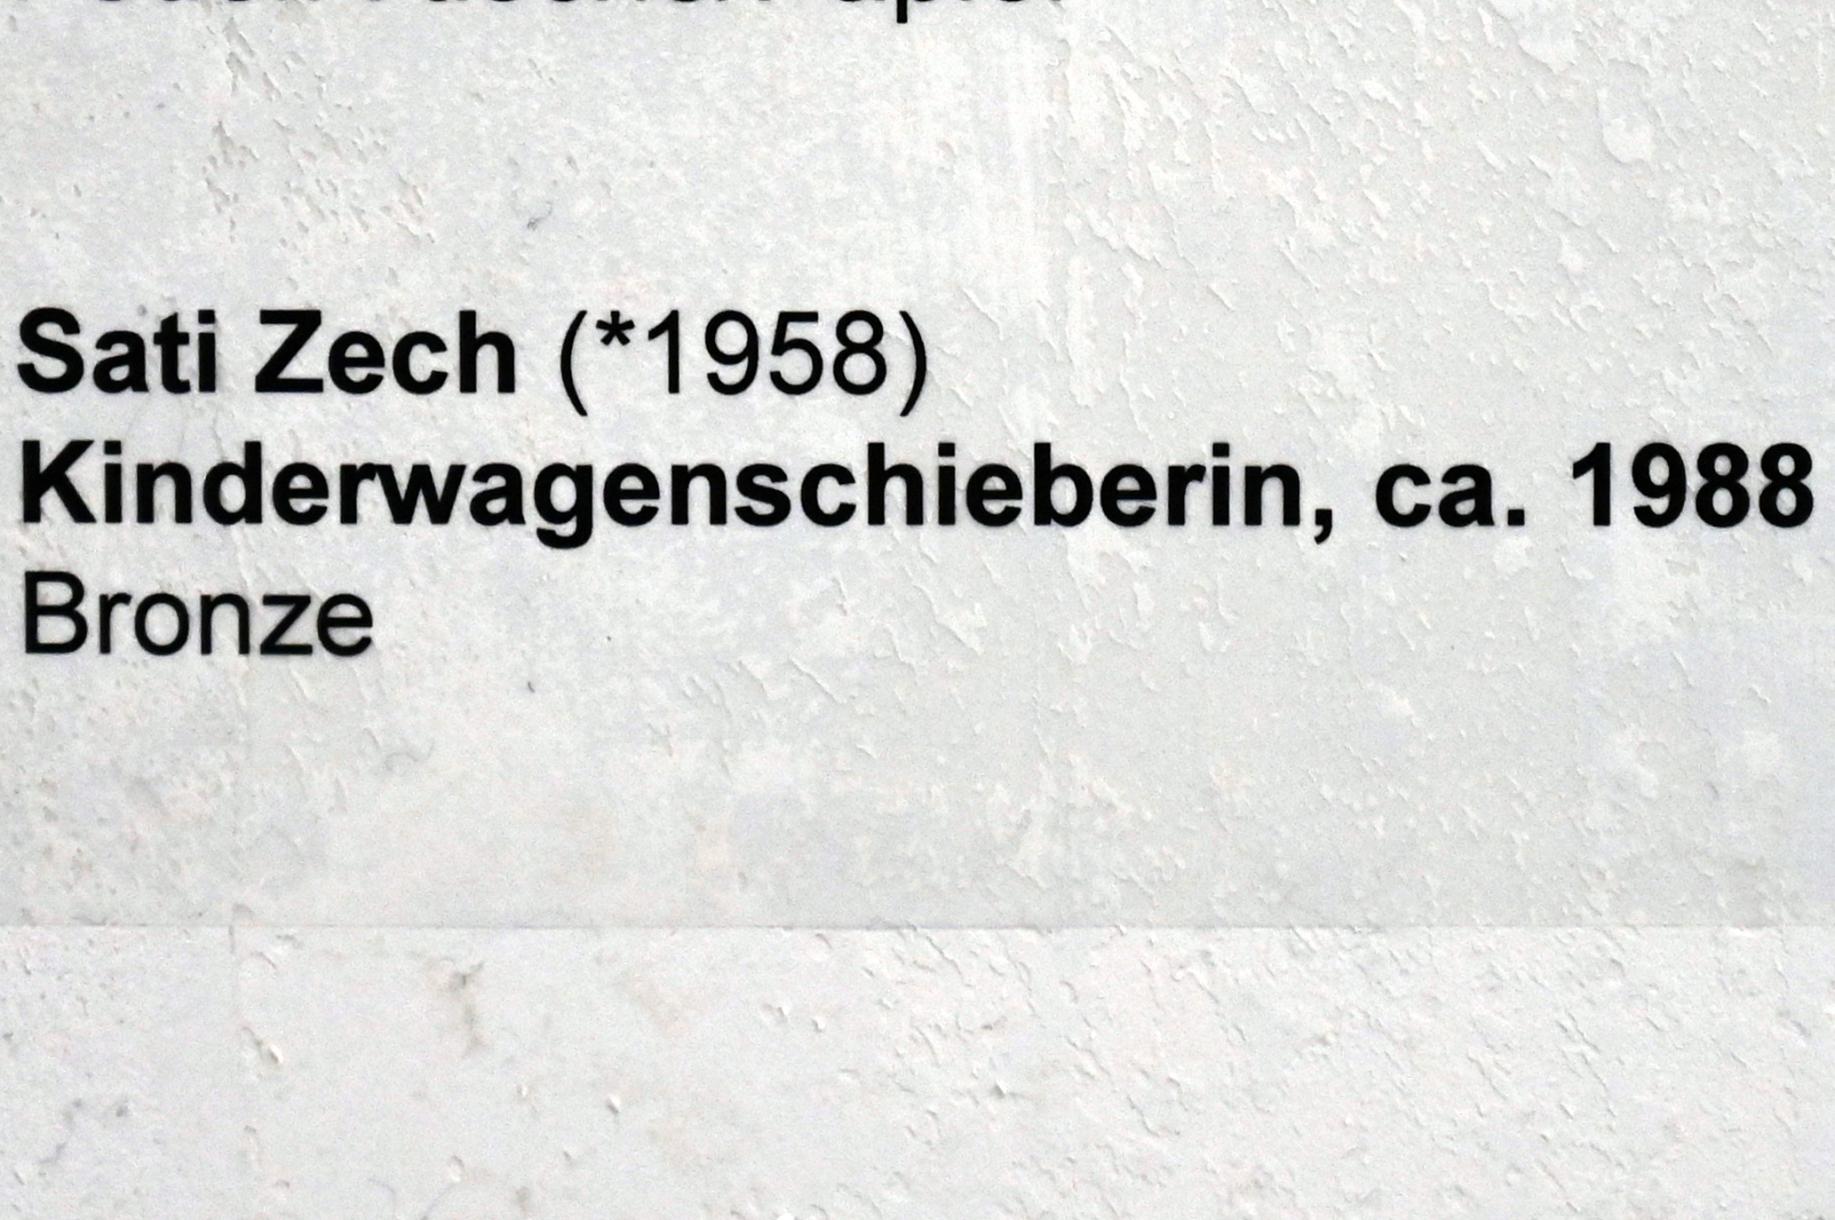 Sati Zech (1988–2000), Kinderwagenschieberin, Neumarkt in der Oberpfalz, Museum Lothar Fischer, Obergeschoß Raum 8, um 1988, Bild 3/3